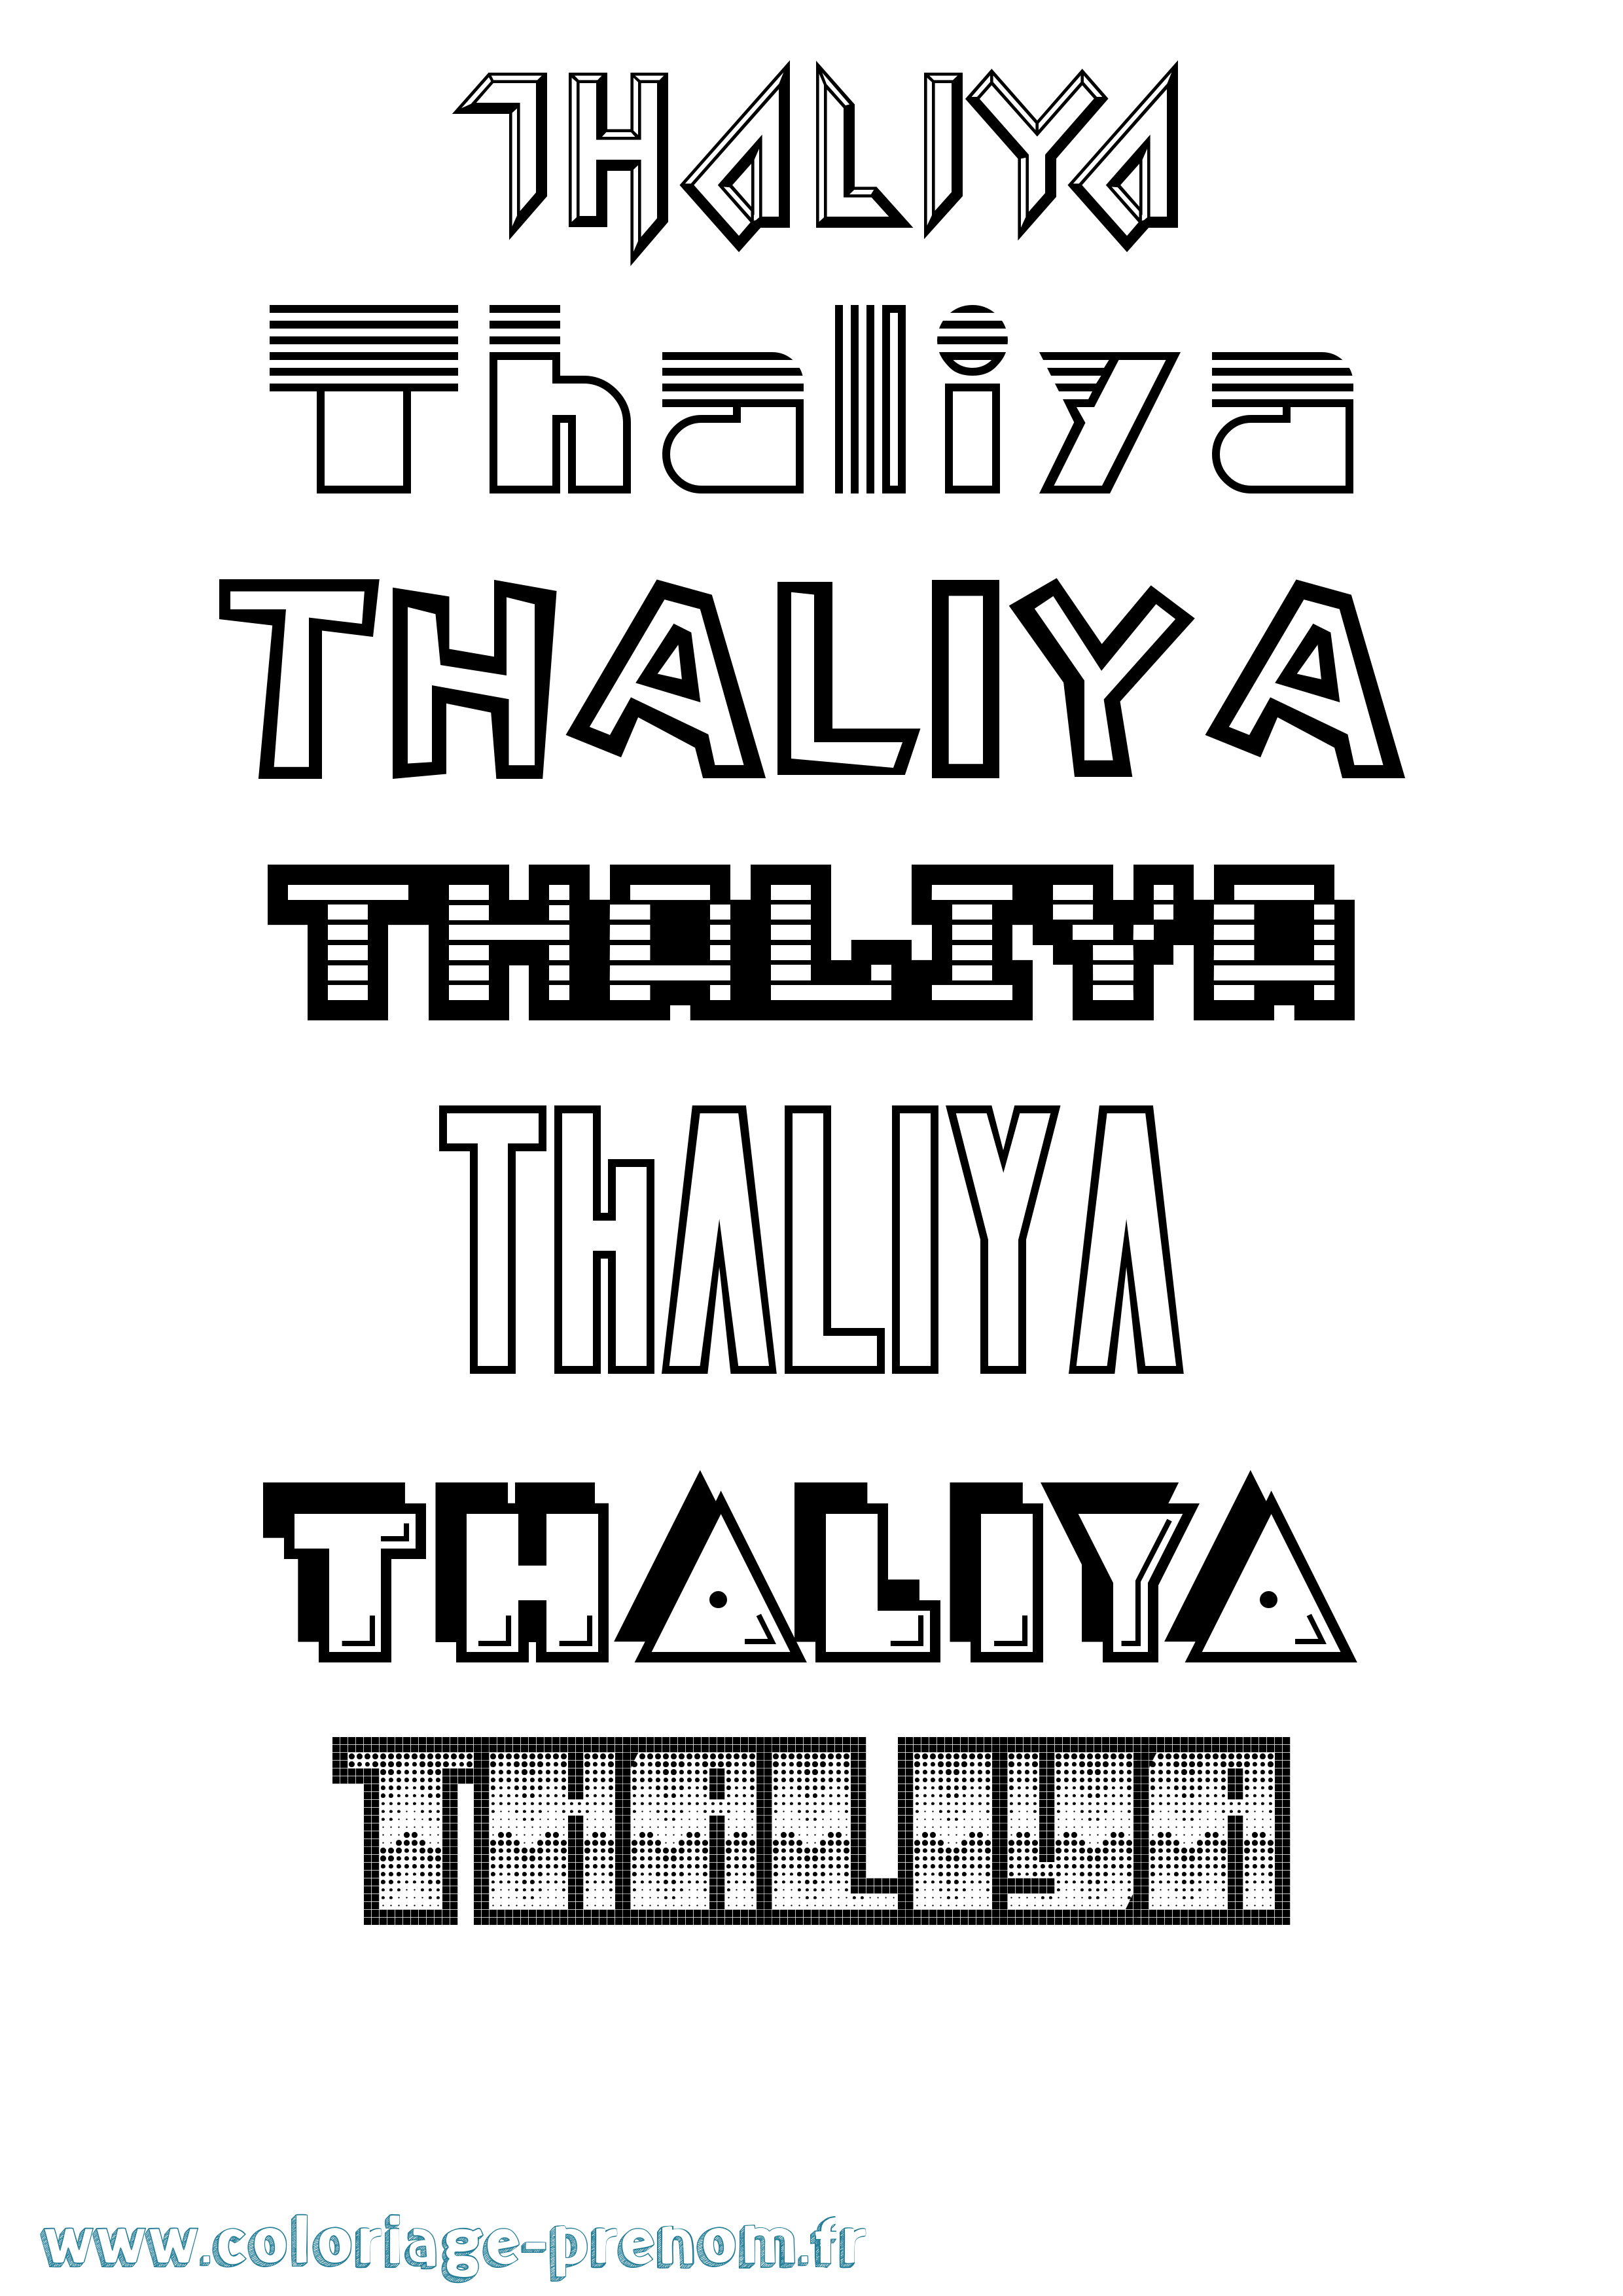 Coloriage prénom Thaliya Jeux Vidéos